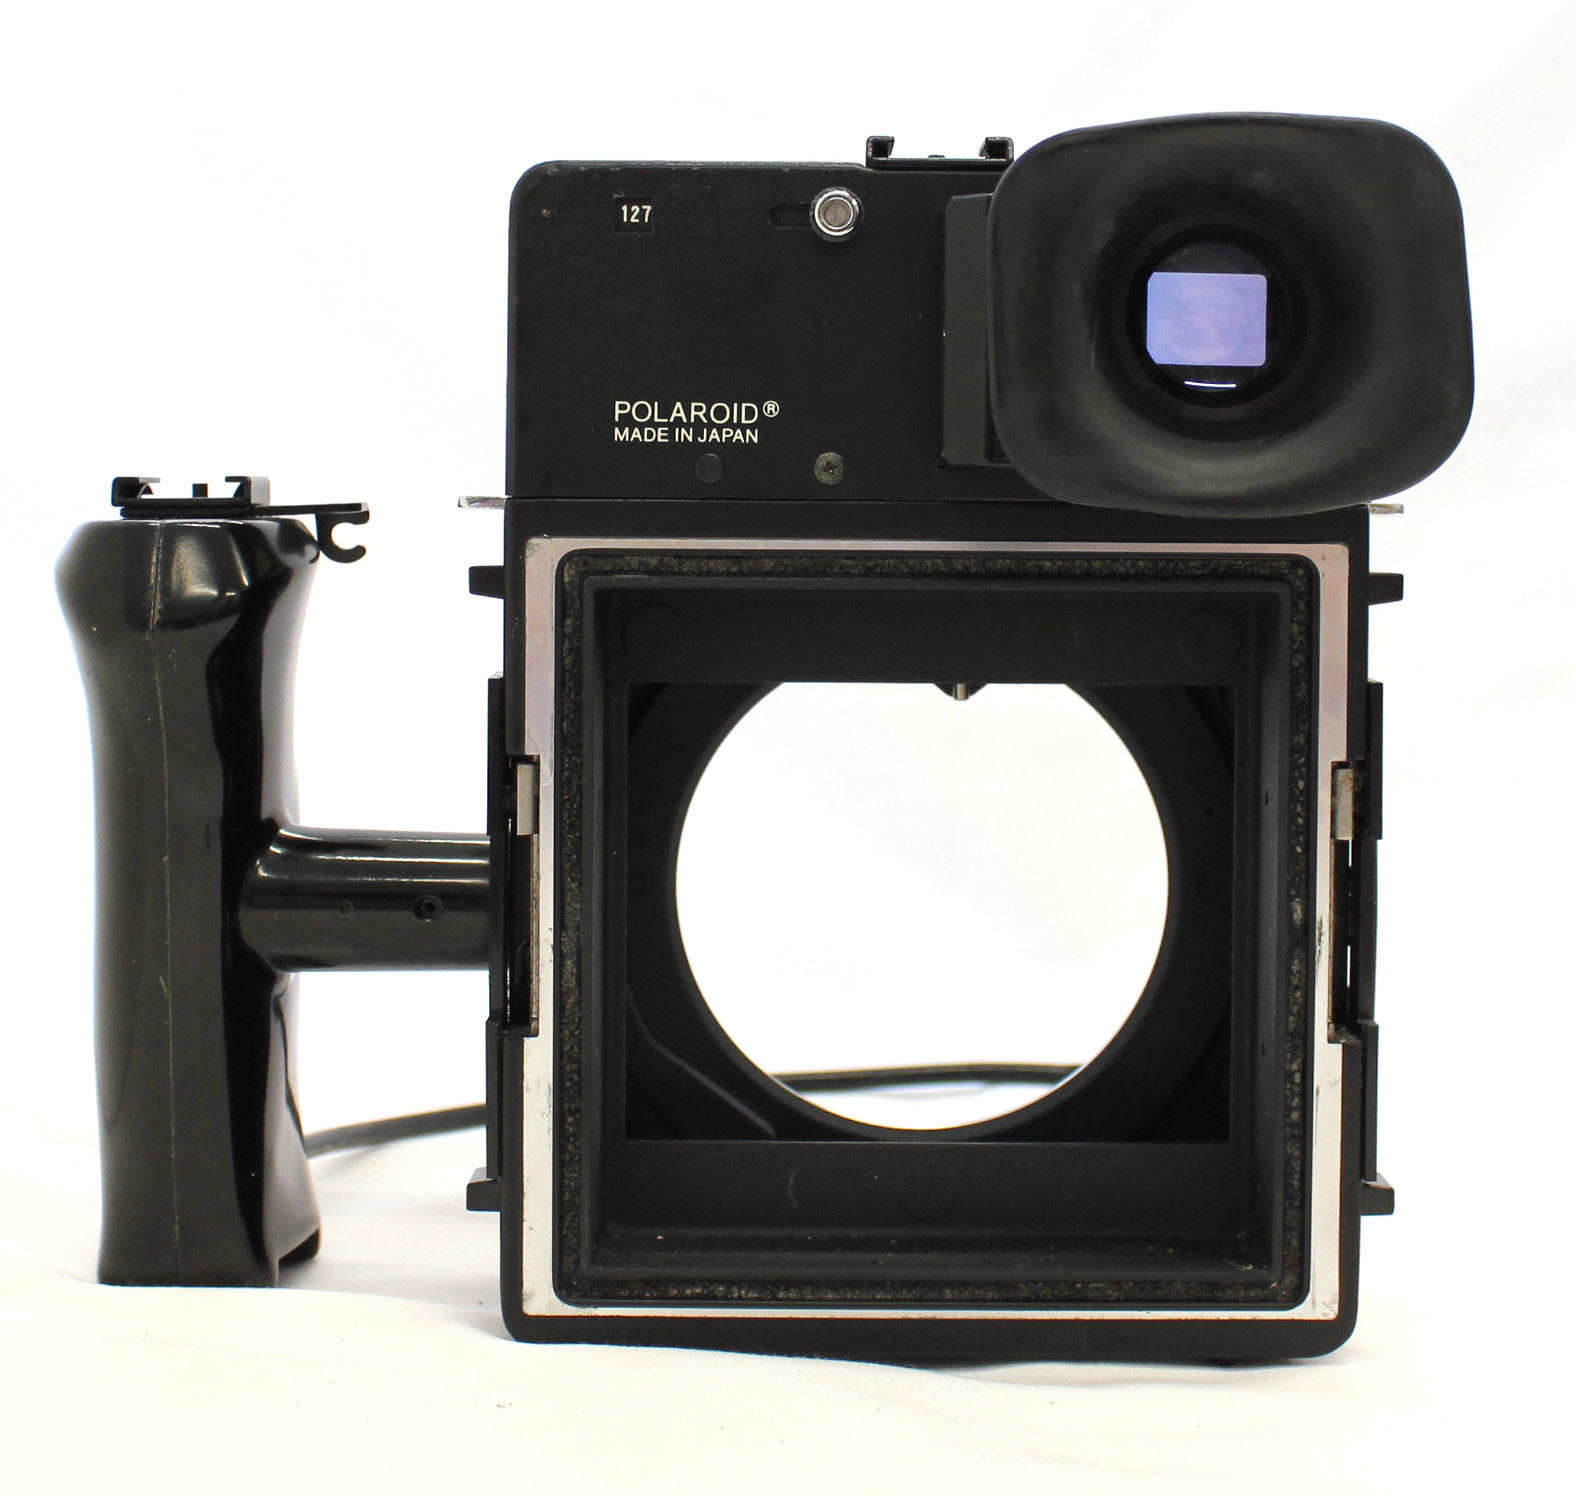  Polaroid 600 SE Instant Camera w/ Mamiya 127mm F/4.7 Lens and Polaroid Back from Japan Photo 6